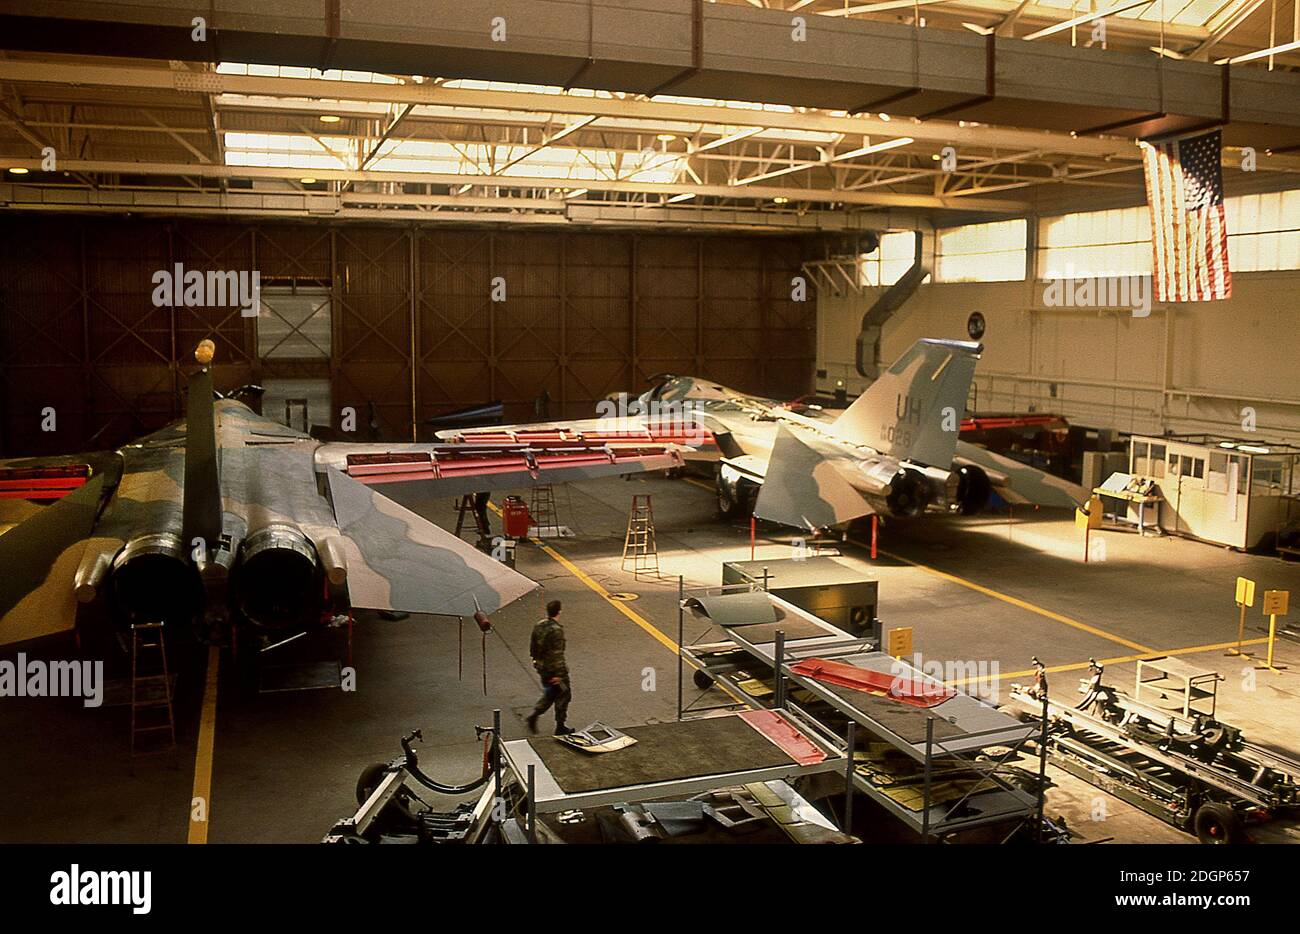 Base aerea RAF Upper Heyford Oxfordshire UK 1990. Sede del 20° USAF Tactical Fighter Wing. Volo F111 Aardvark. Foto Stock